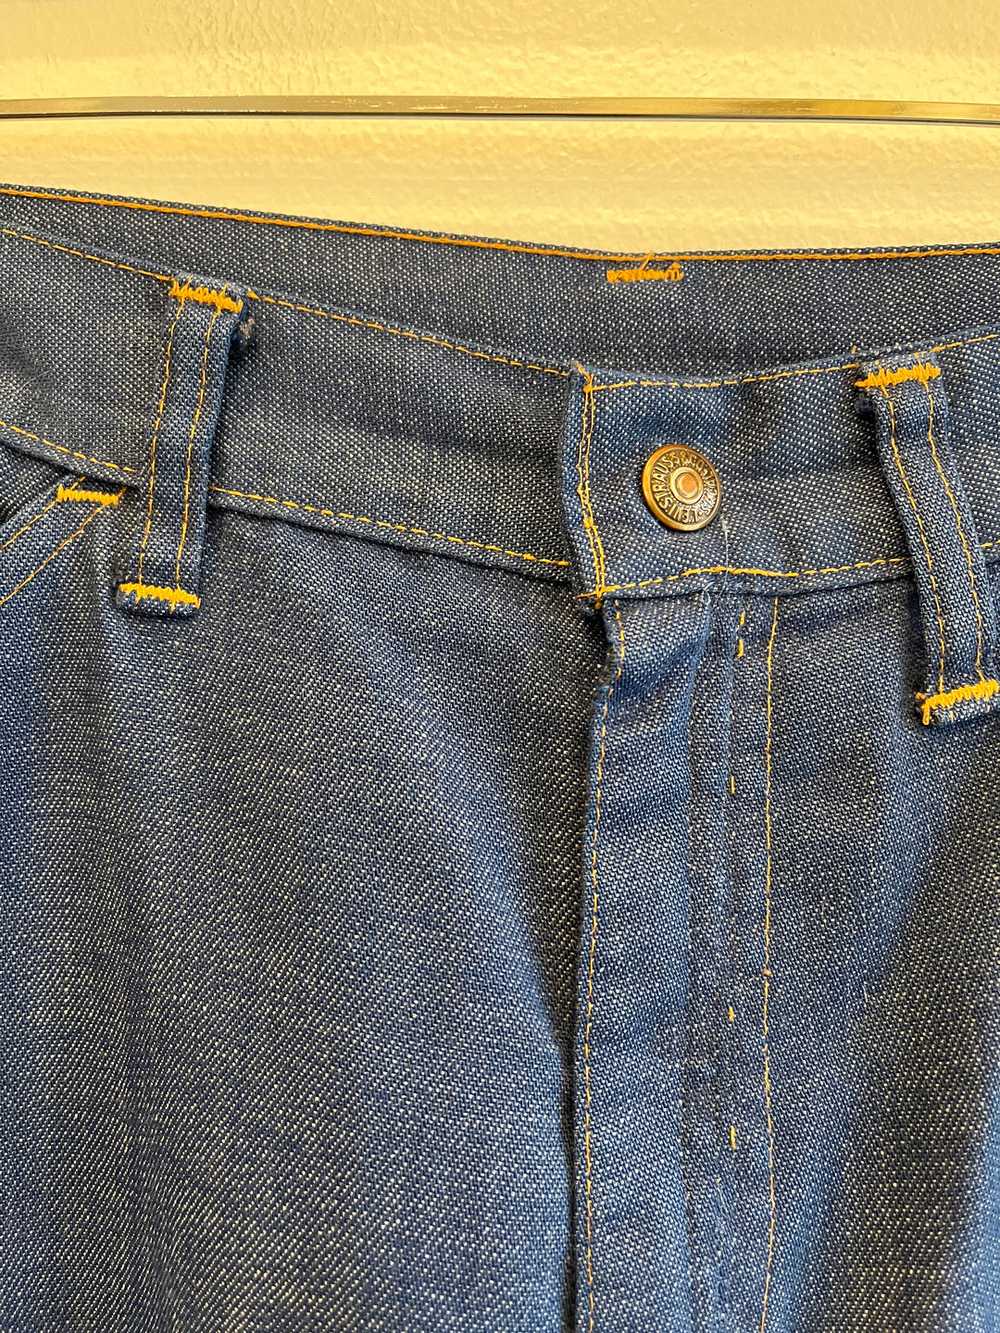 Vintage 1970’s Levi’s “Big E” 917 Denim Jeans - image 2